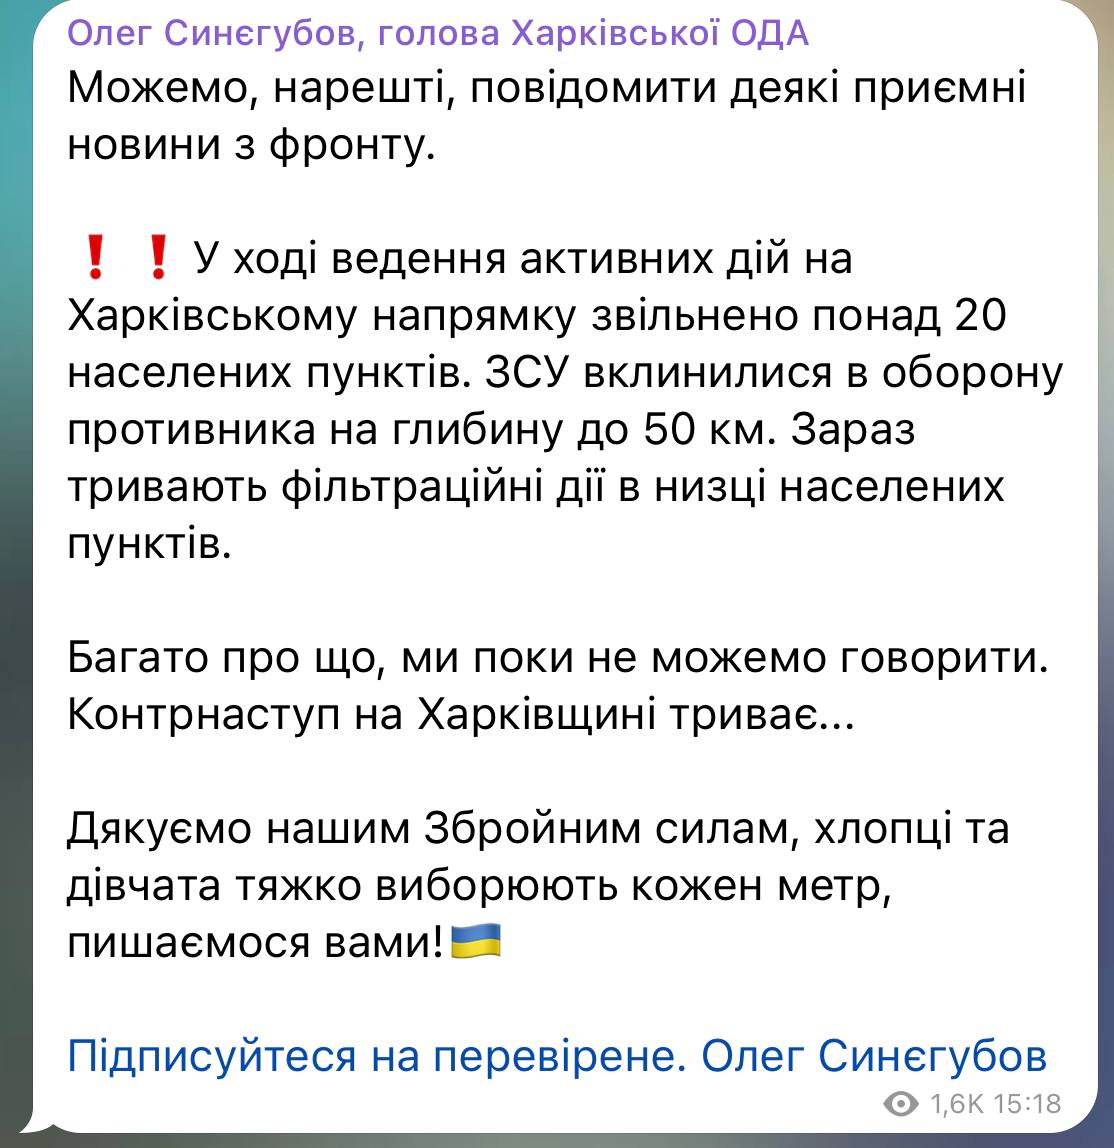 В ходе ведения активных действий на Харьковском направлении освобождено более 20 населенных пунктов